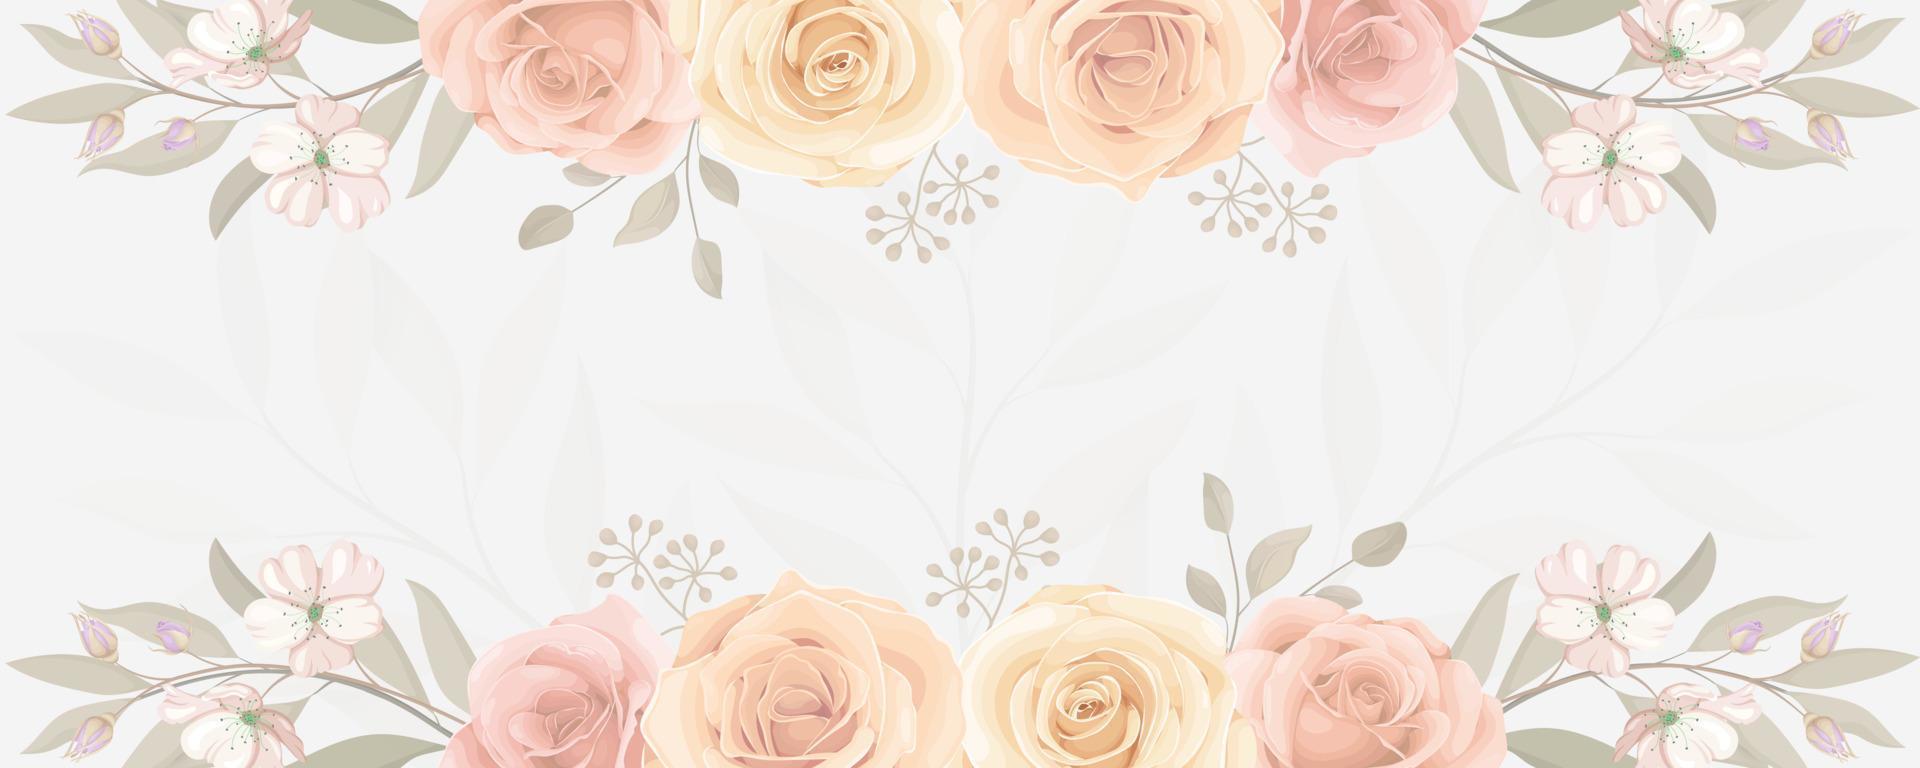 elegantes Banner mit bunt blühender Rosenblütenverzierung vektor